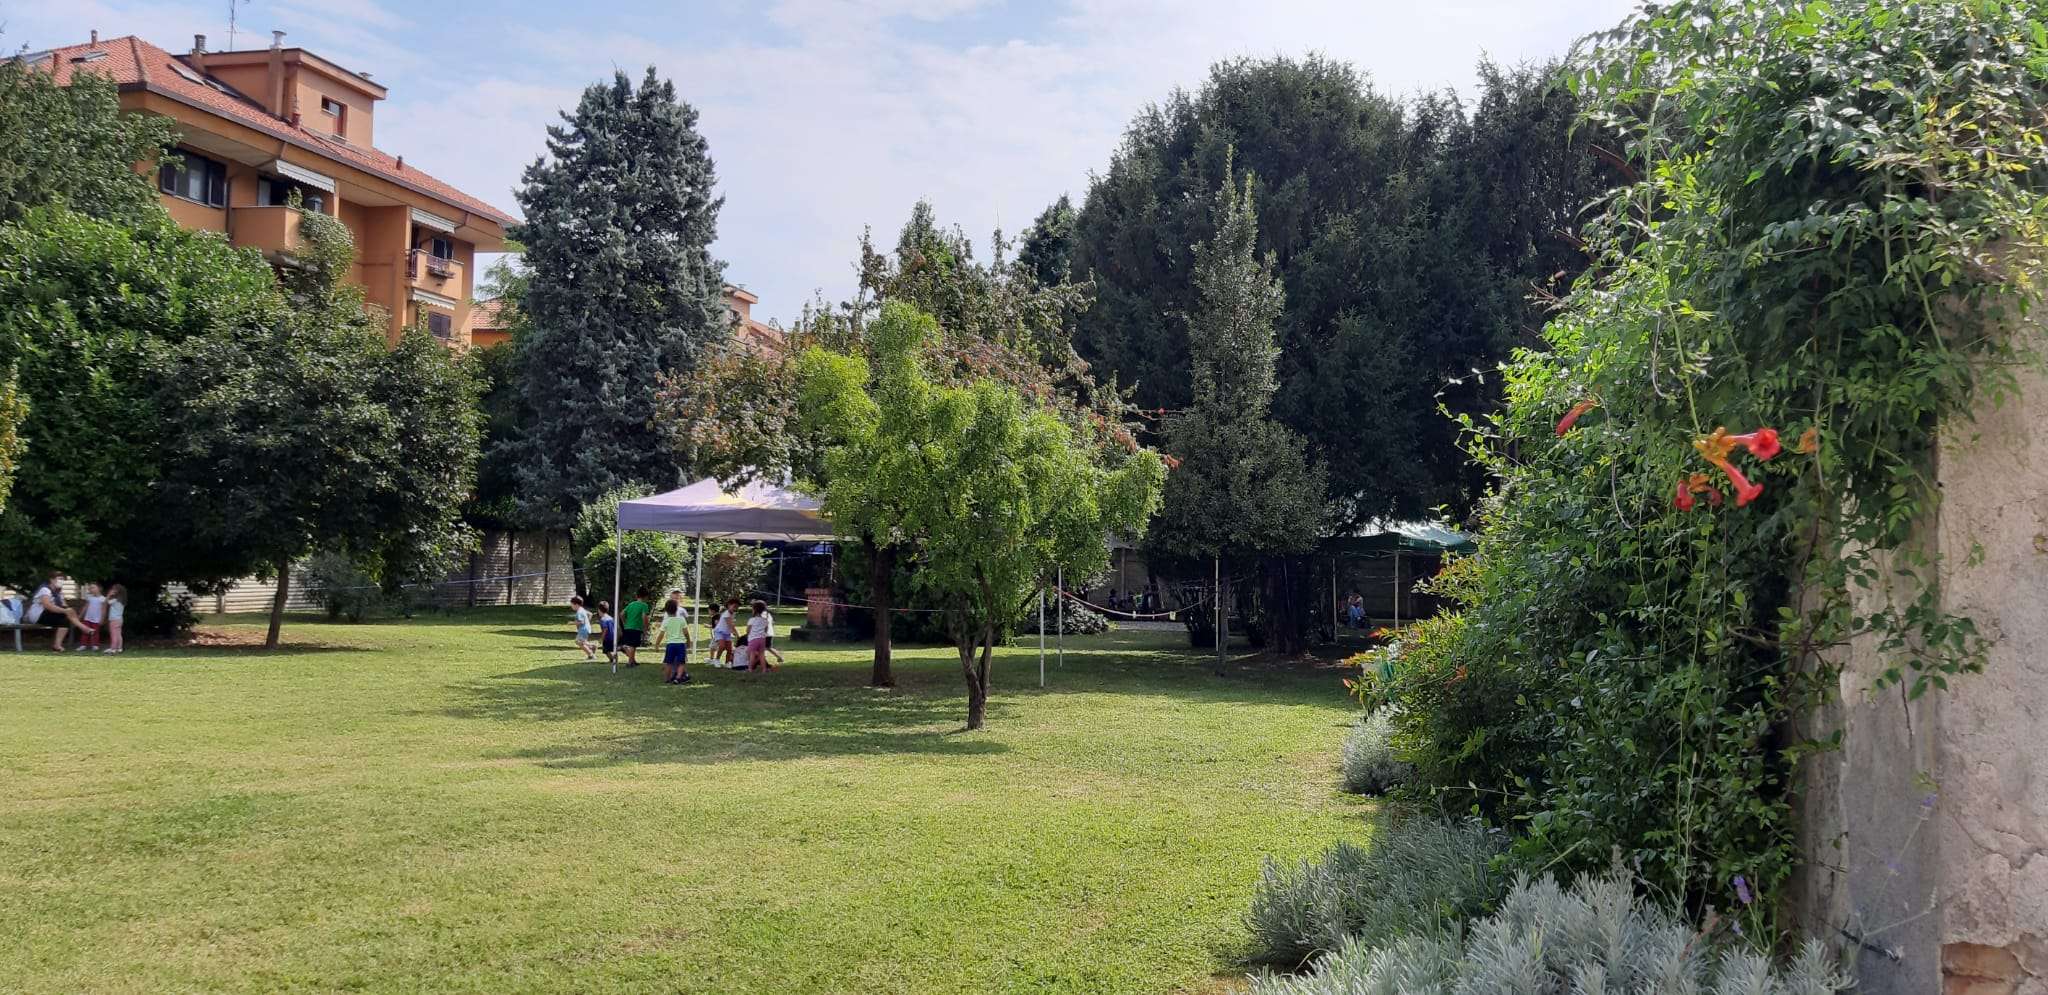 Camp Estivo - Scuola Materna Peschiera Borromeo